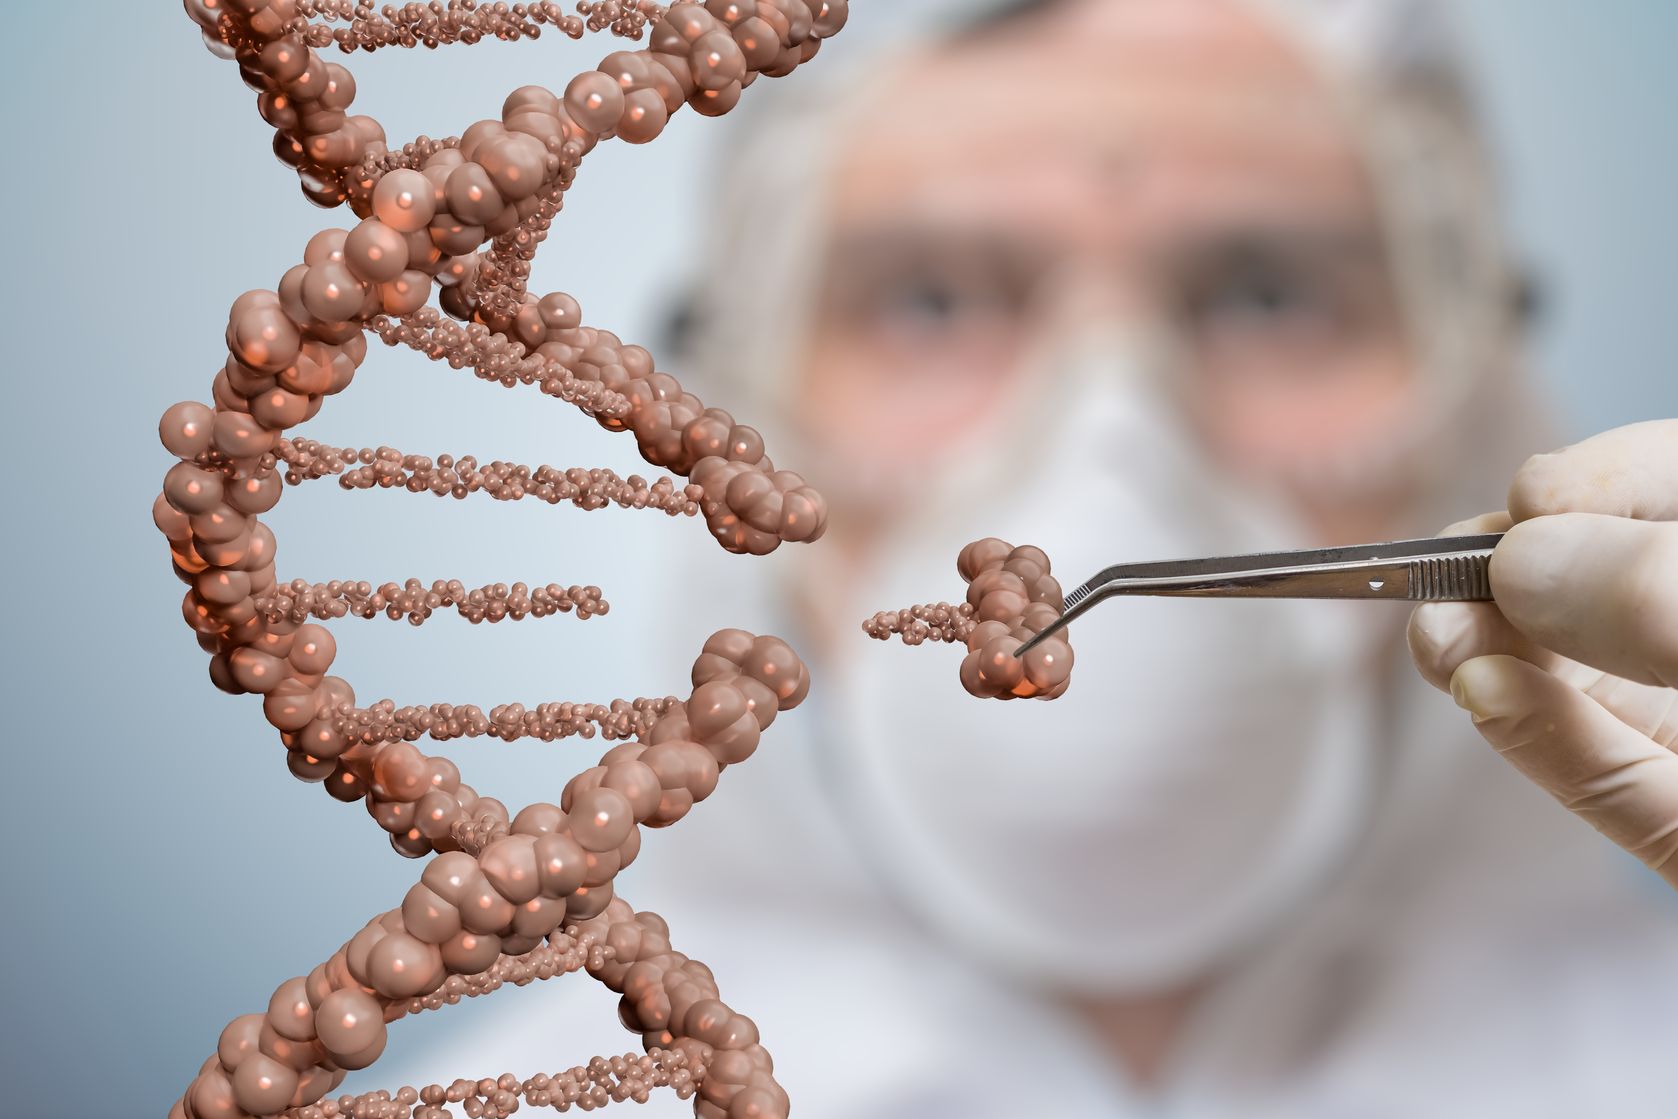 Medipol Üniversitesi Genetik Tanı Merkezi Dışa Bağımlılığı Bitirmeyi Hedefliyor